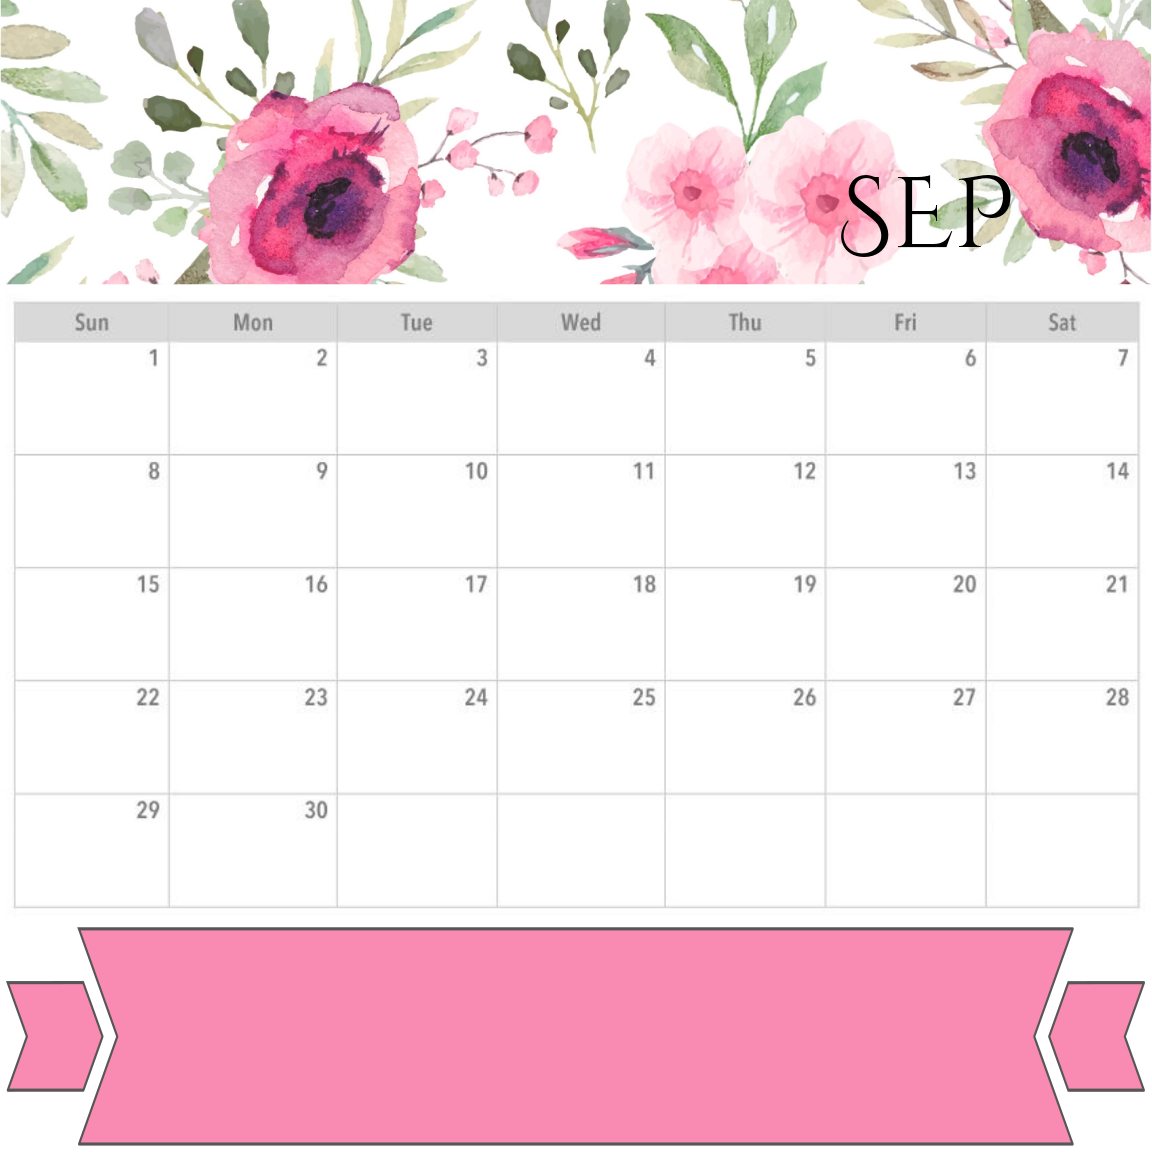 2019 September Calendar Floral Wallpaper - December 2019 Calendar Planner - HD Wallpaper 